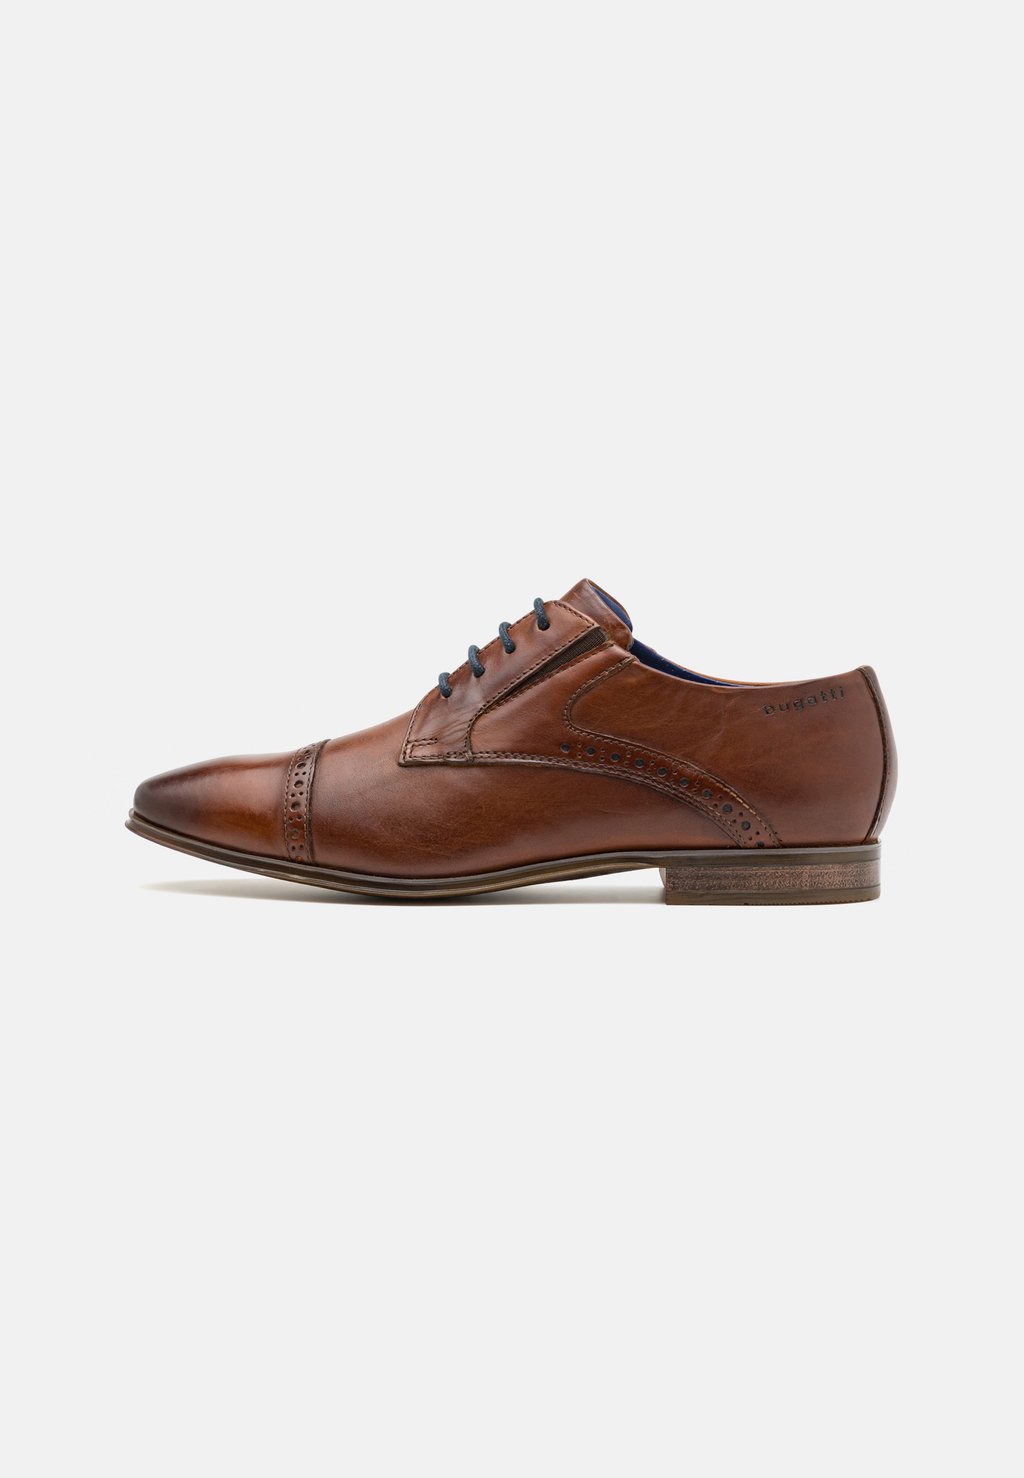 Элегантные туфли на шнуровке Morino bugatti, цвет cognac элегантные туфли на шнуровке faro aldo цвет cognac